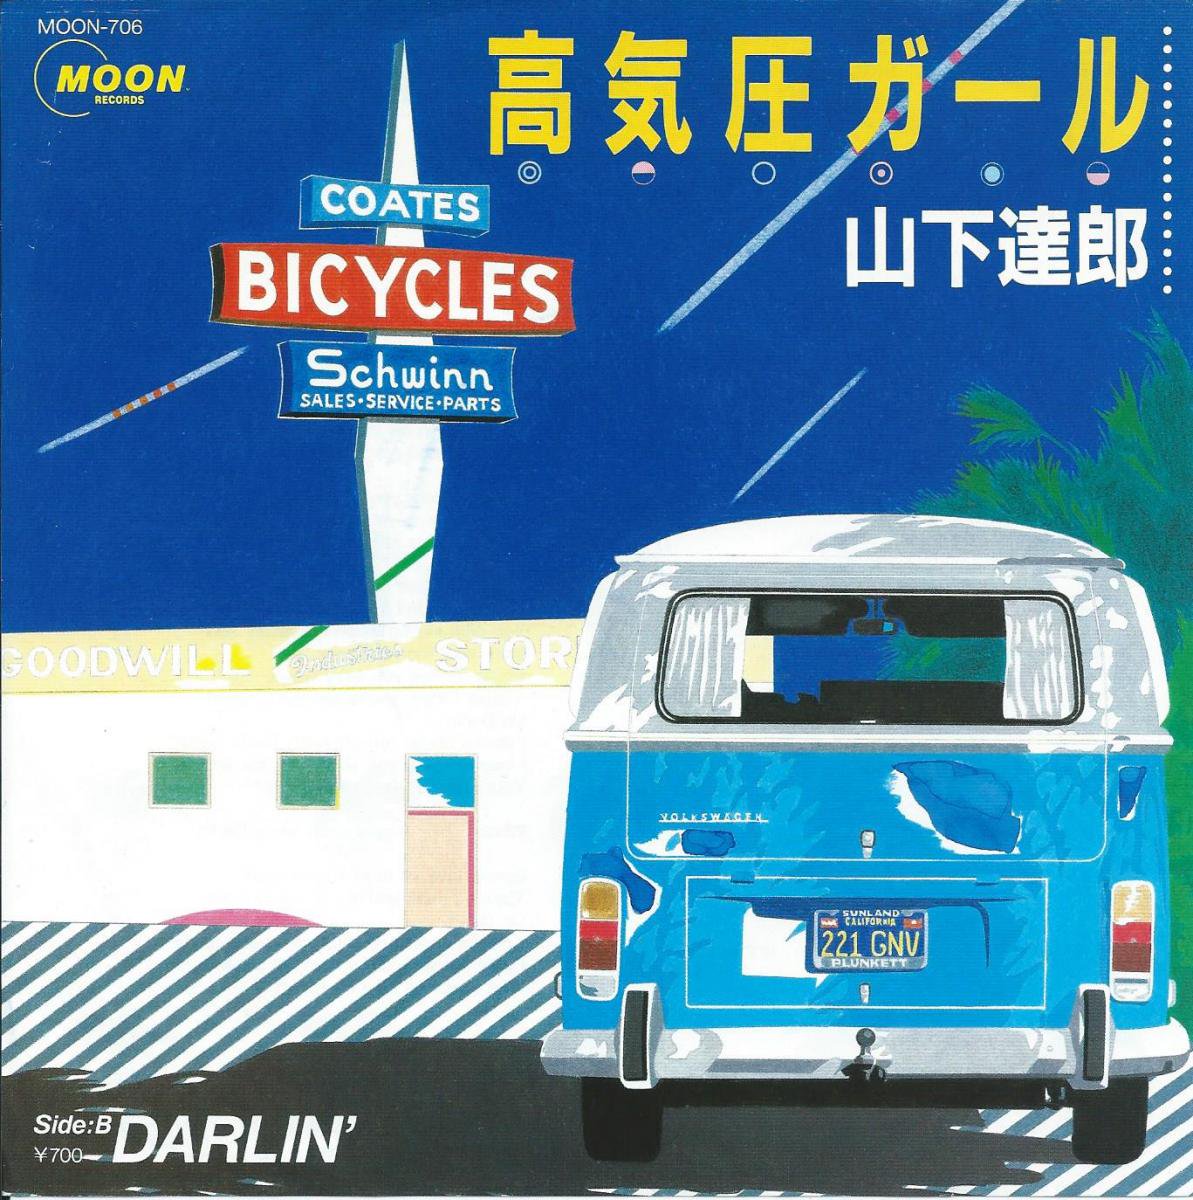 山下達郎 MOON Records Summer Campaign '85 - www.bisaggio.com.br